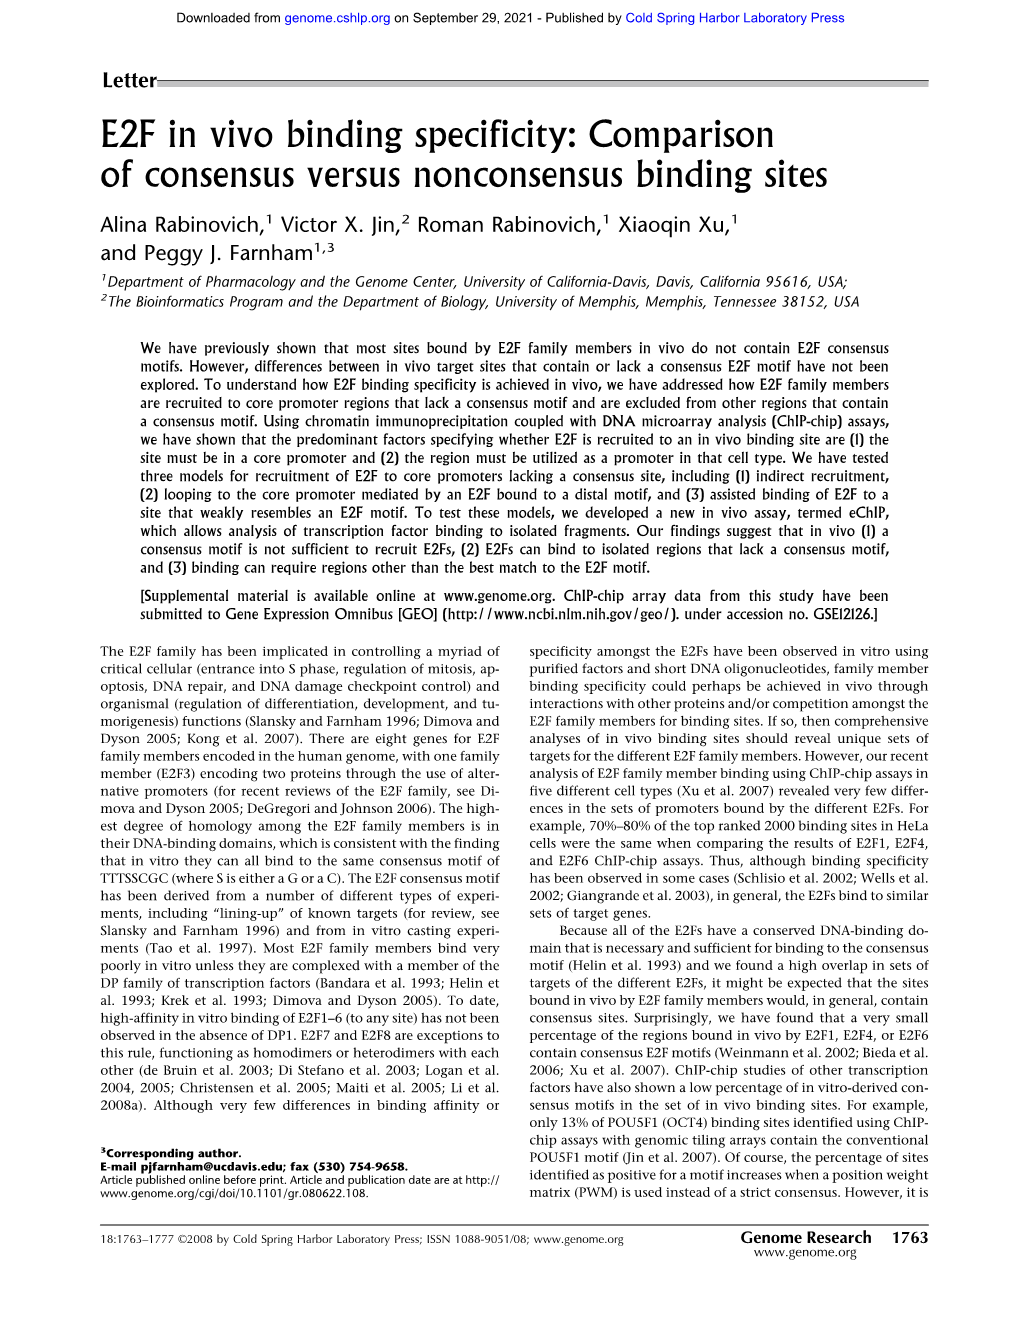 E2F in Vivo Binding Specificity: Comparison of Consensus Versus Nonconsensus Binding Sites